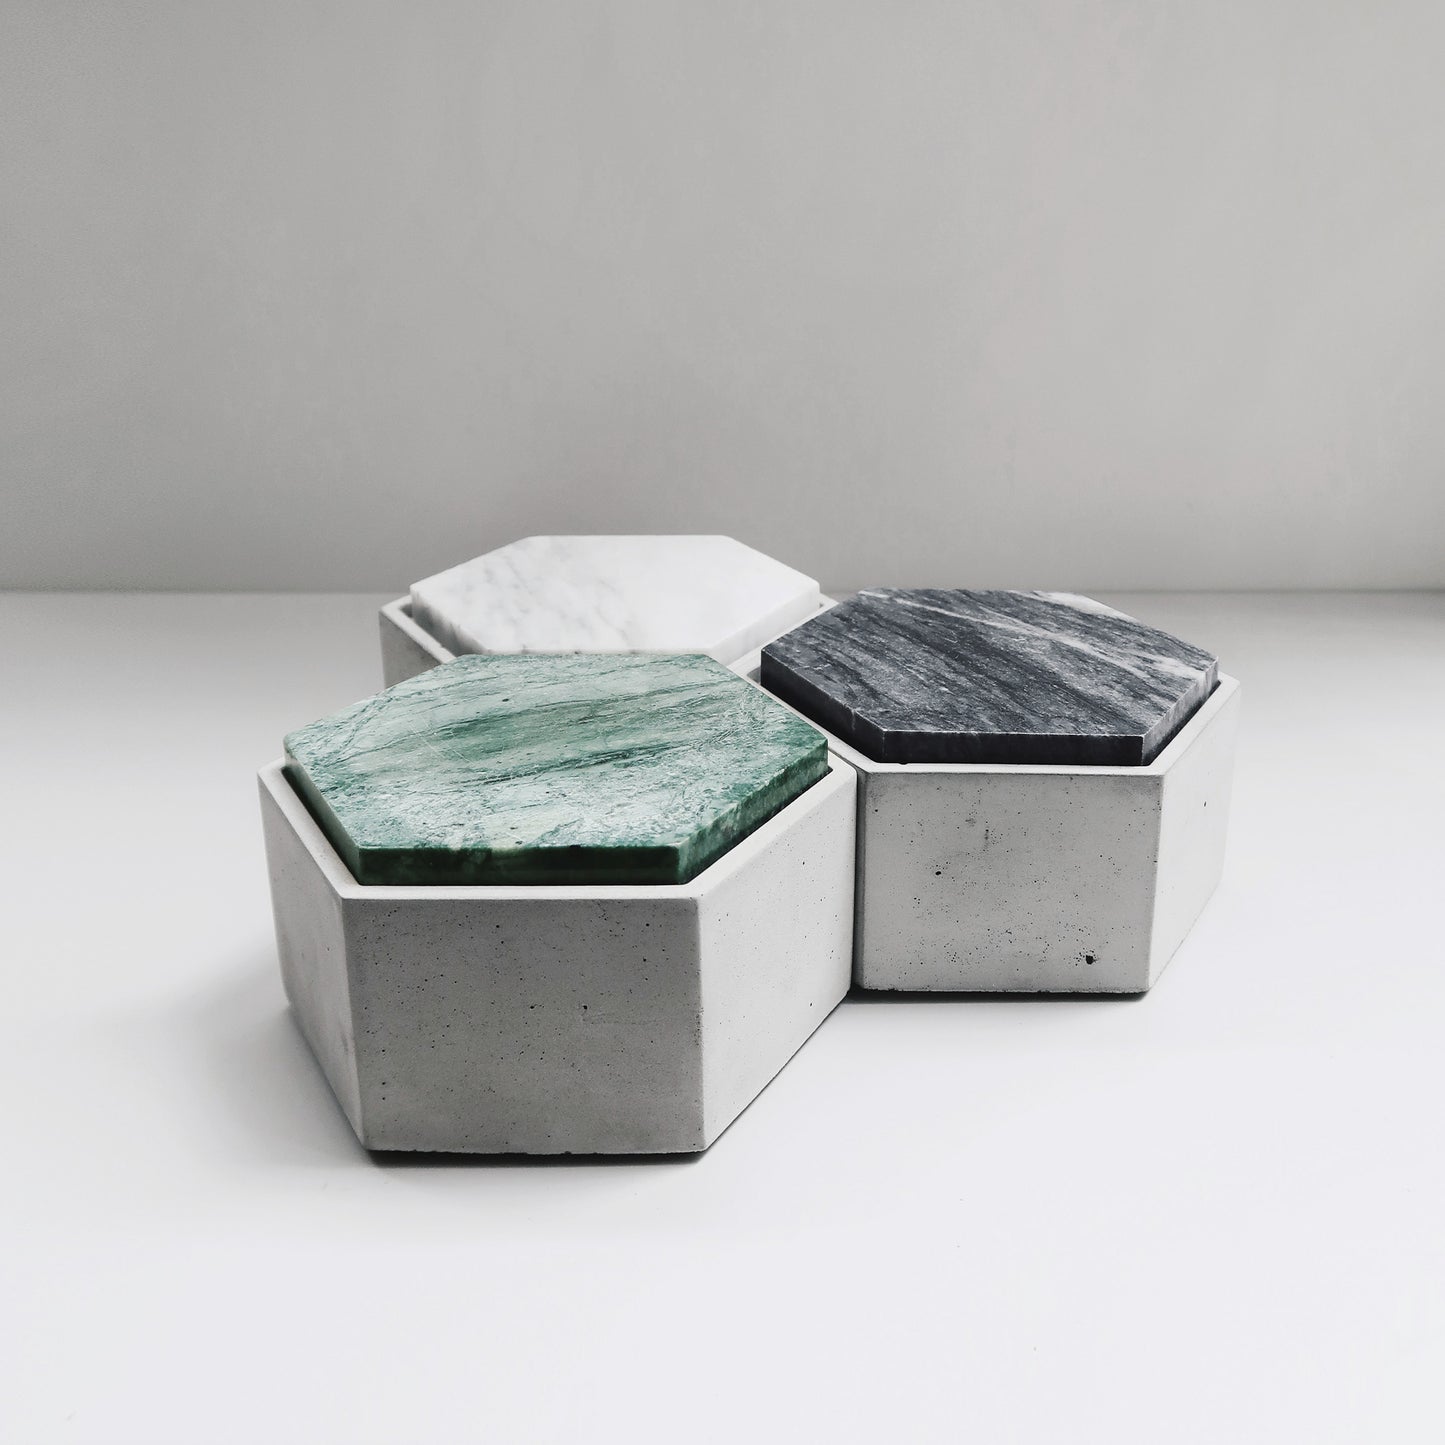 THE ROCK 雲岩｜六角大理石蓋水泥置物盒 - 黑/白/綠